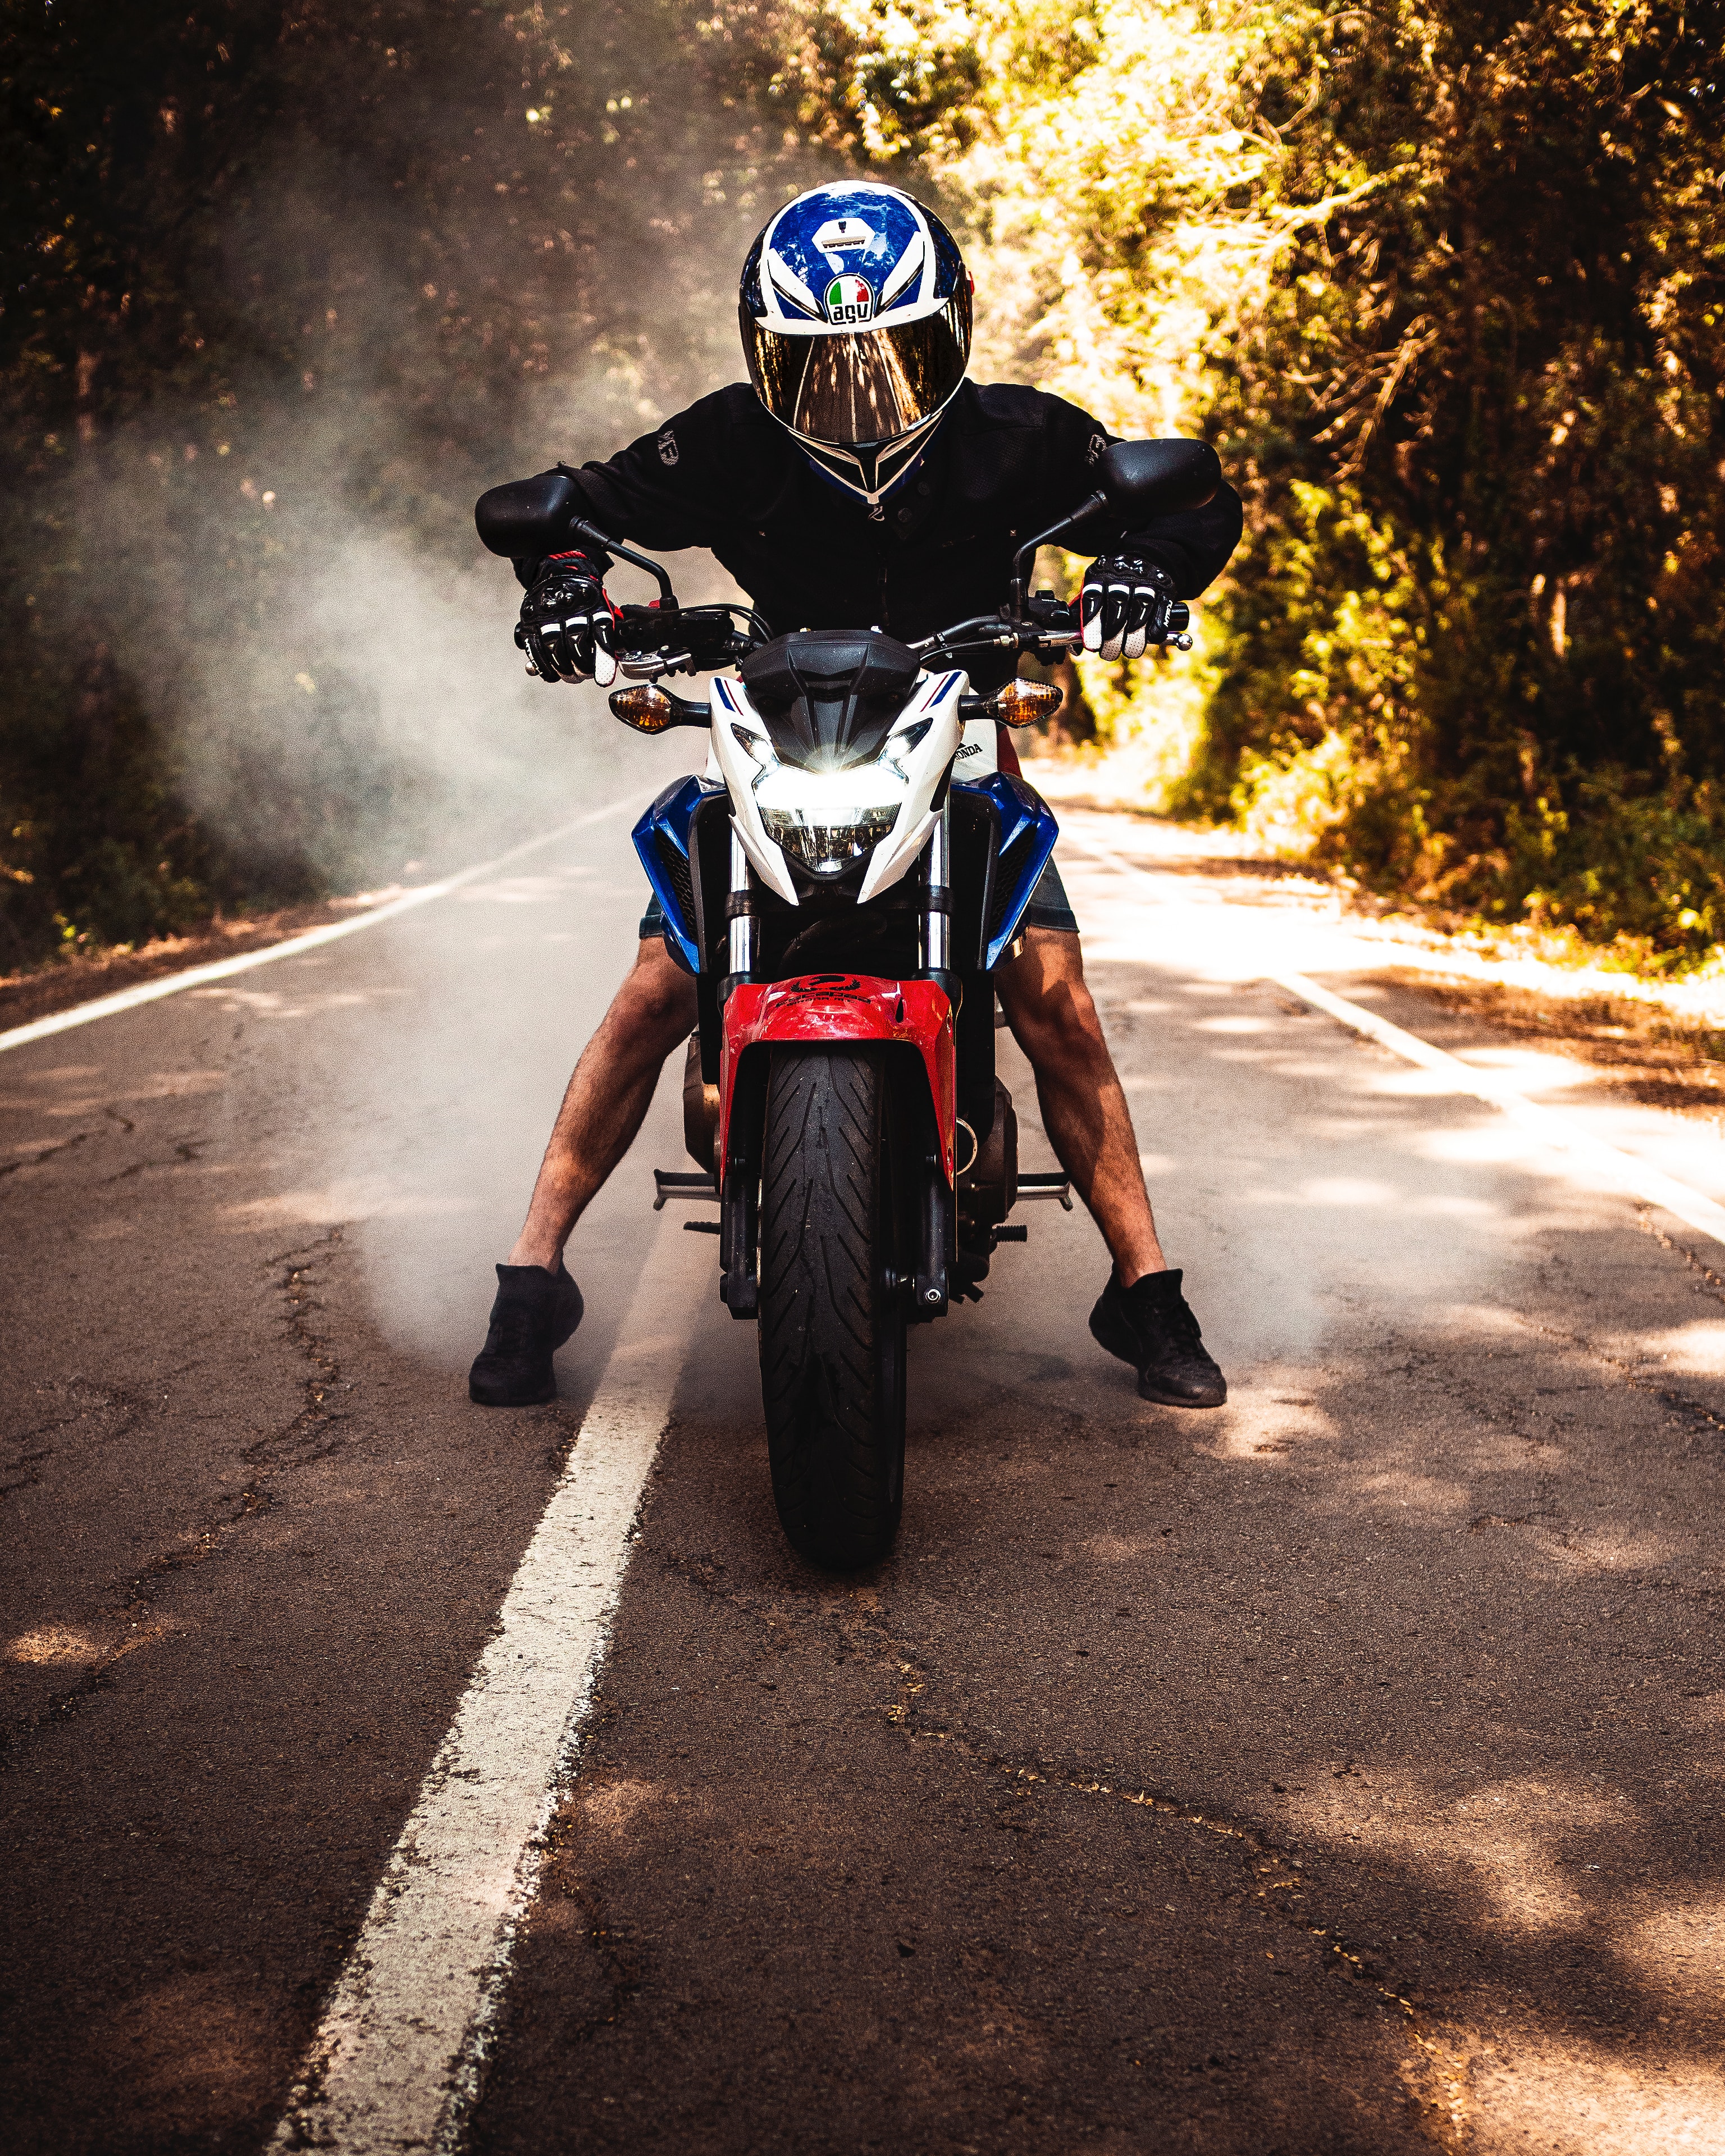 motorcycles, motorcyclist, helmet, motorcycle, bike